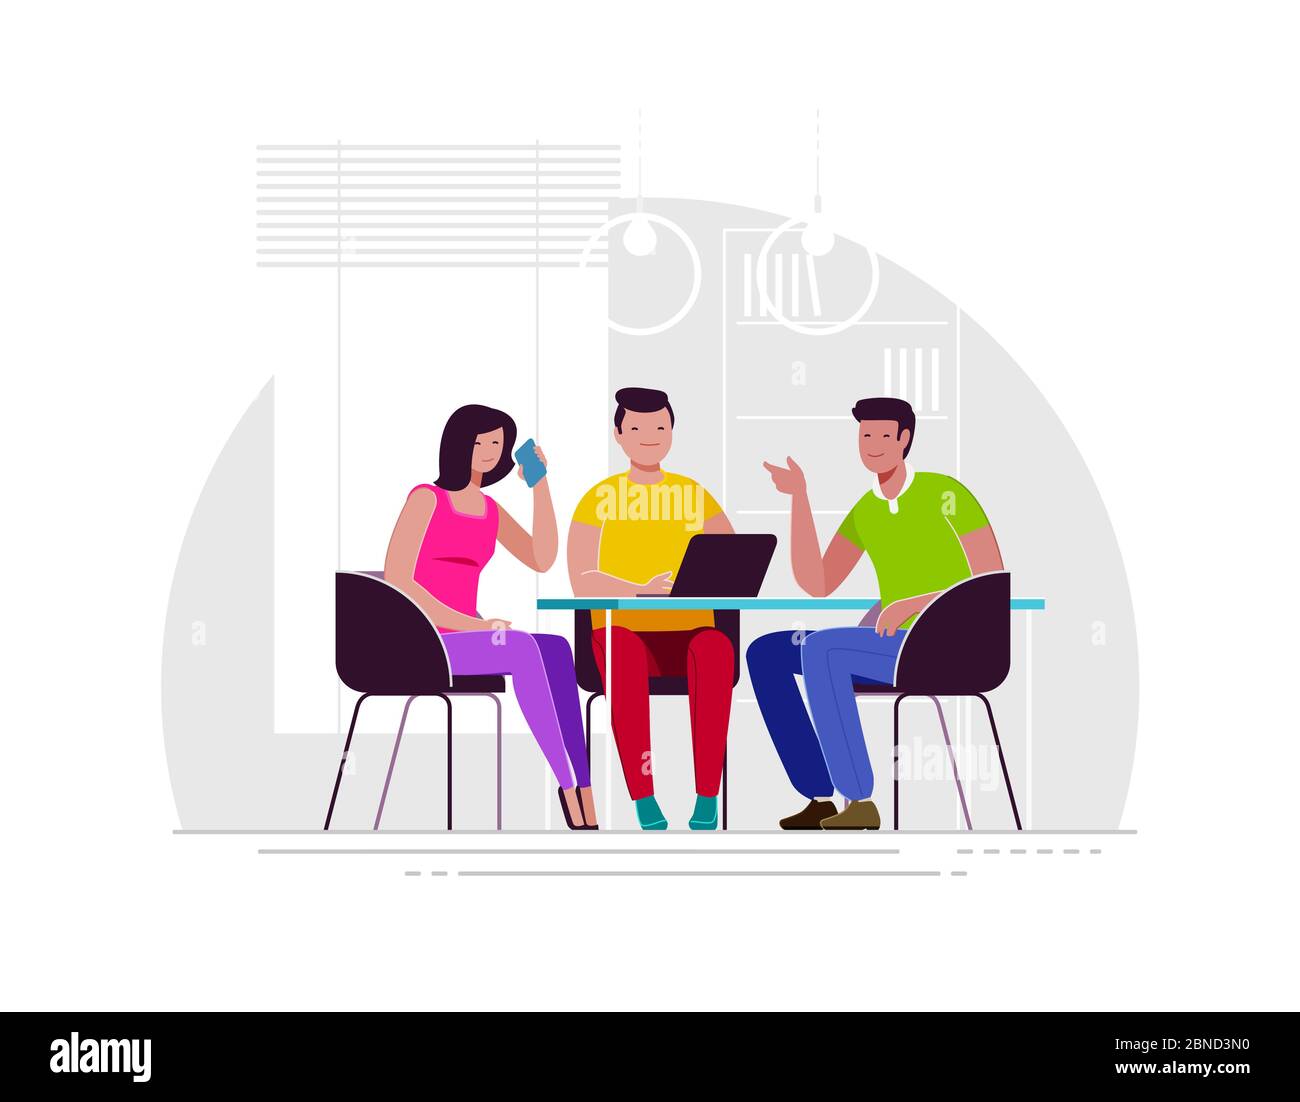 Teamarbeit, Brainstorming. Mitarbeiter verhandeln, während sie am Tisch sitzen Stock Vektor